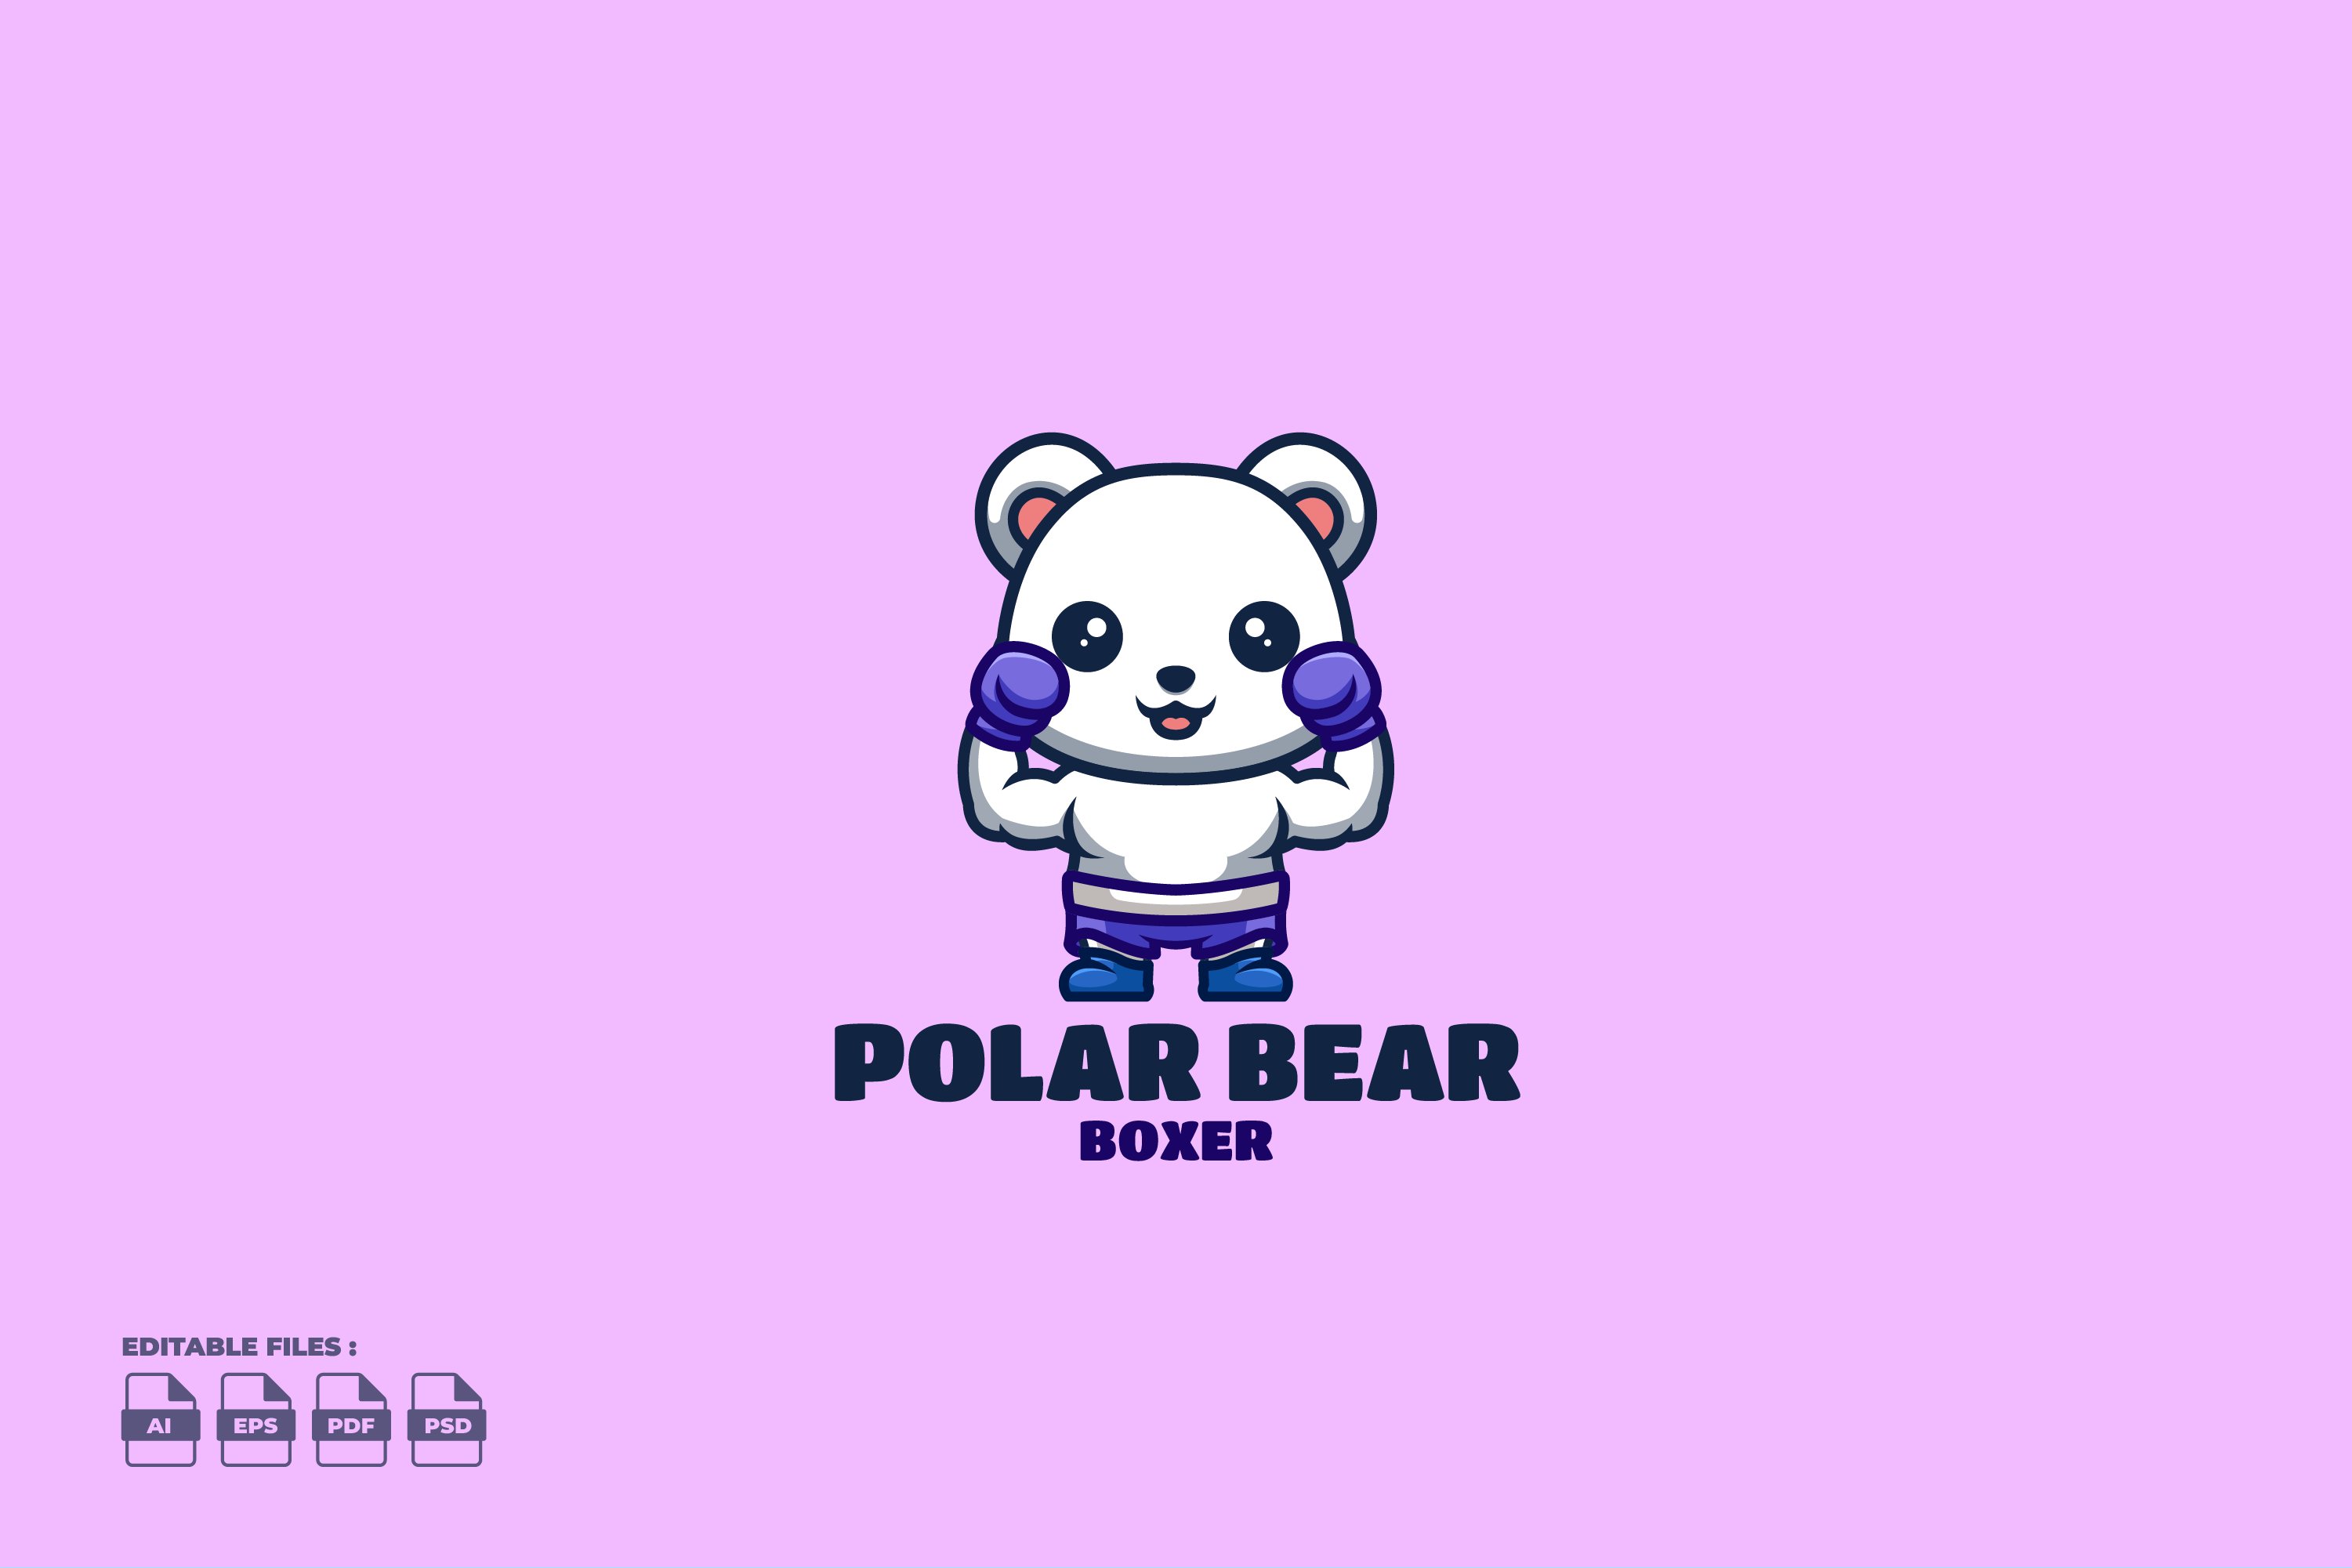 Boxer Polar Bear Cute Mascot Logo cover image.